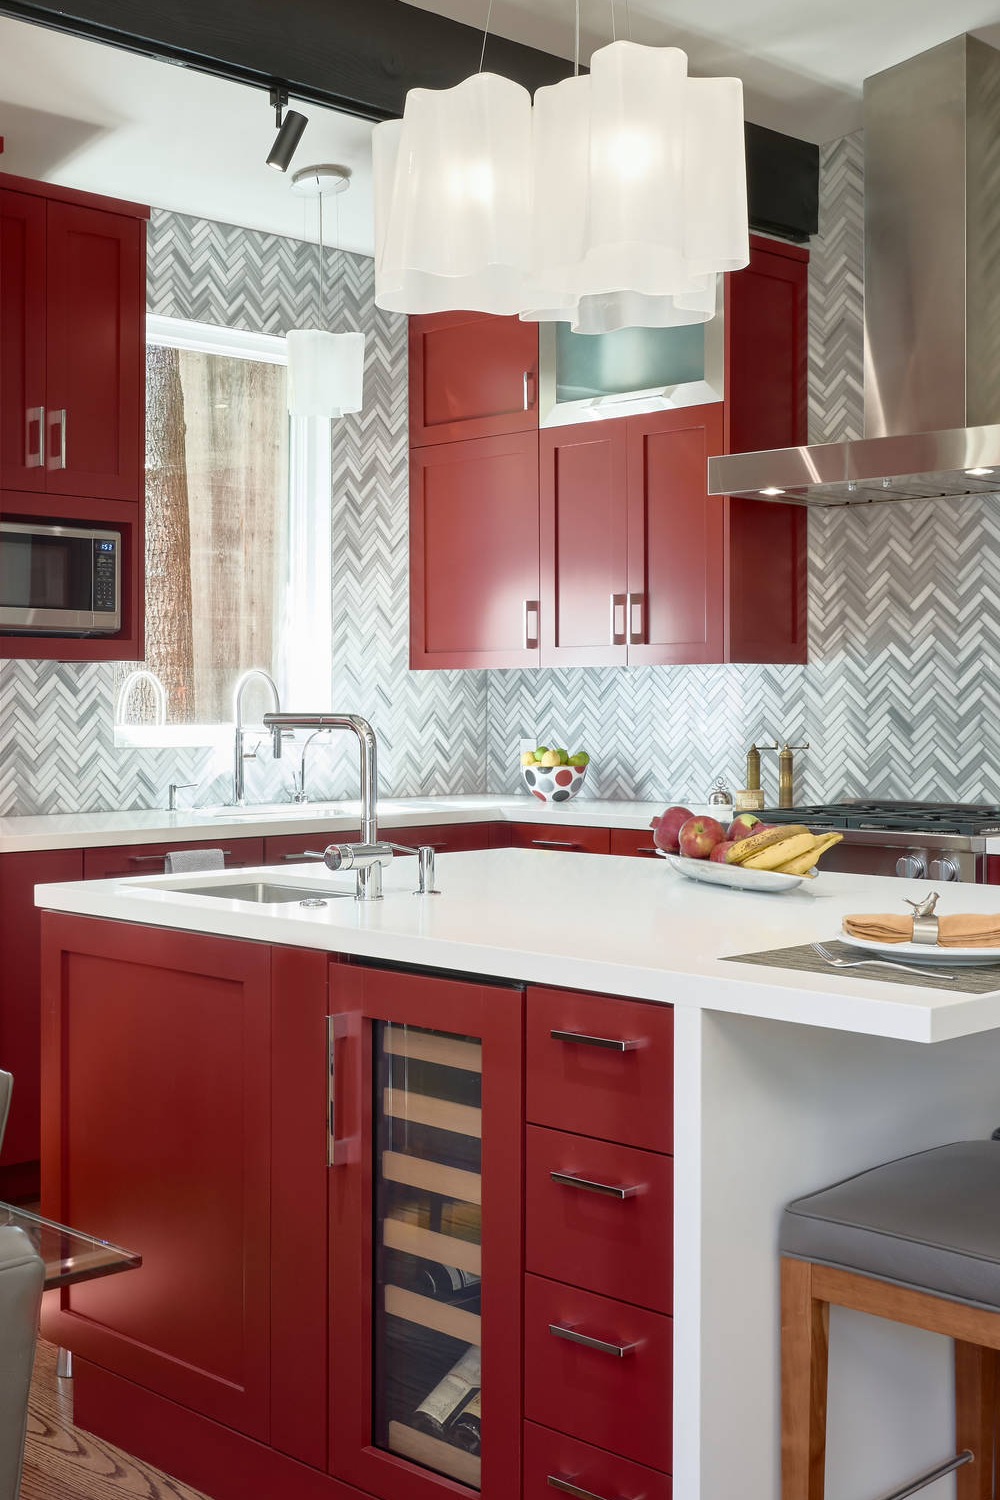 Herringbone Tiles Red Cabinet Pattern Ceramic Wood Floor Create White Quartz Counter